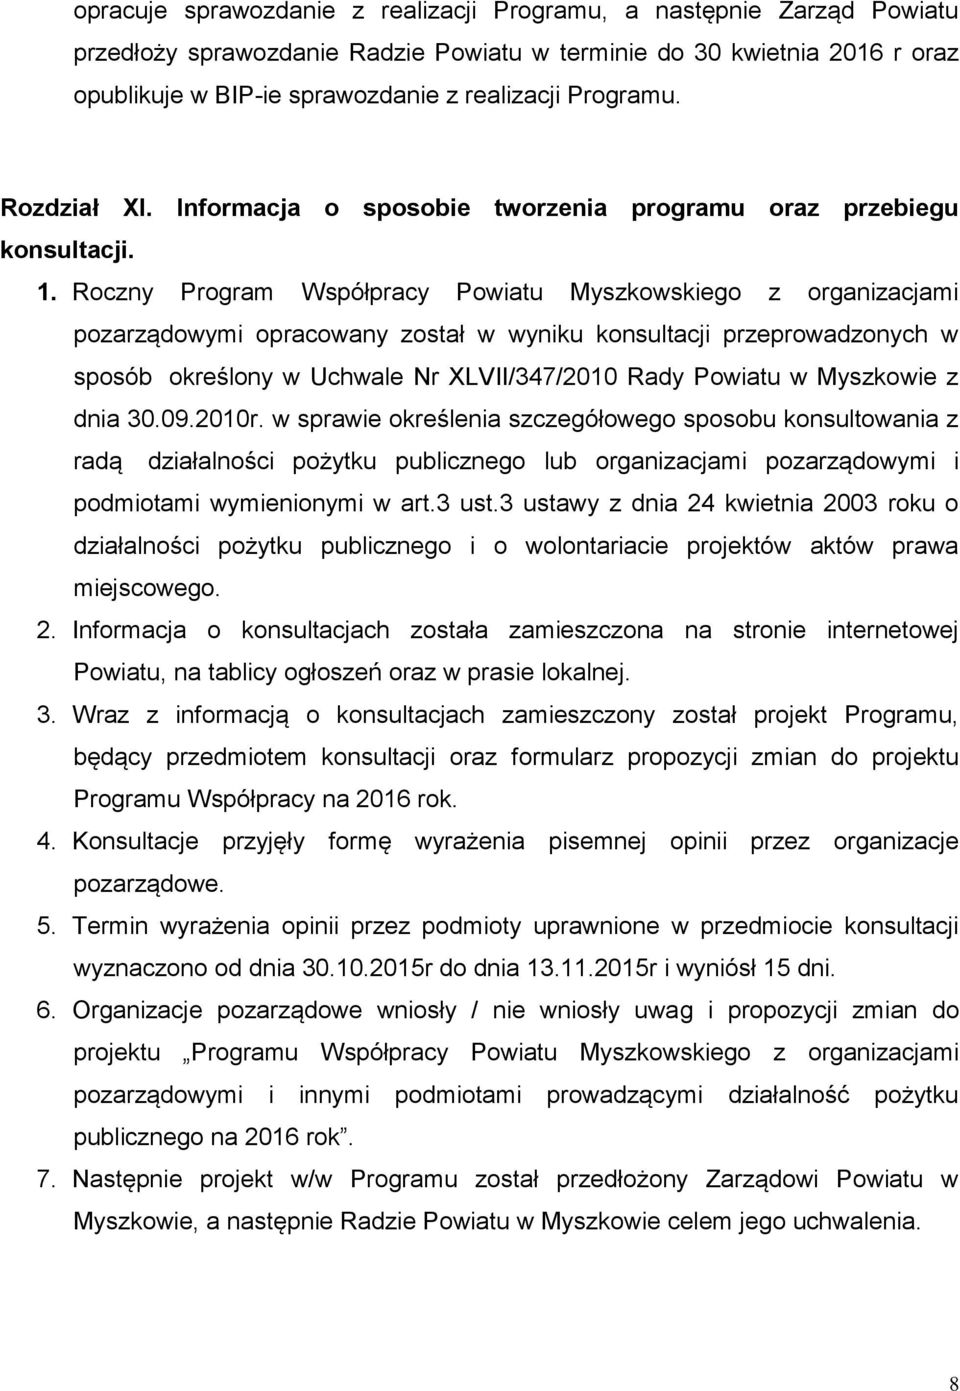 Roczny Program Współpracy Powiatu Myszkowskiego z organizacjami pozarządowymi opracowany został w wyniku konsultacji przeprowadzonych w sposób określony w Uchwale Nr XLVII/347/2010 Rady Powiatu w